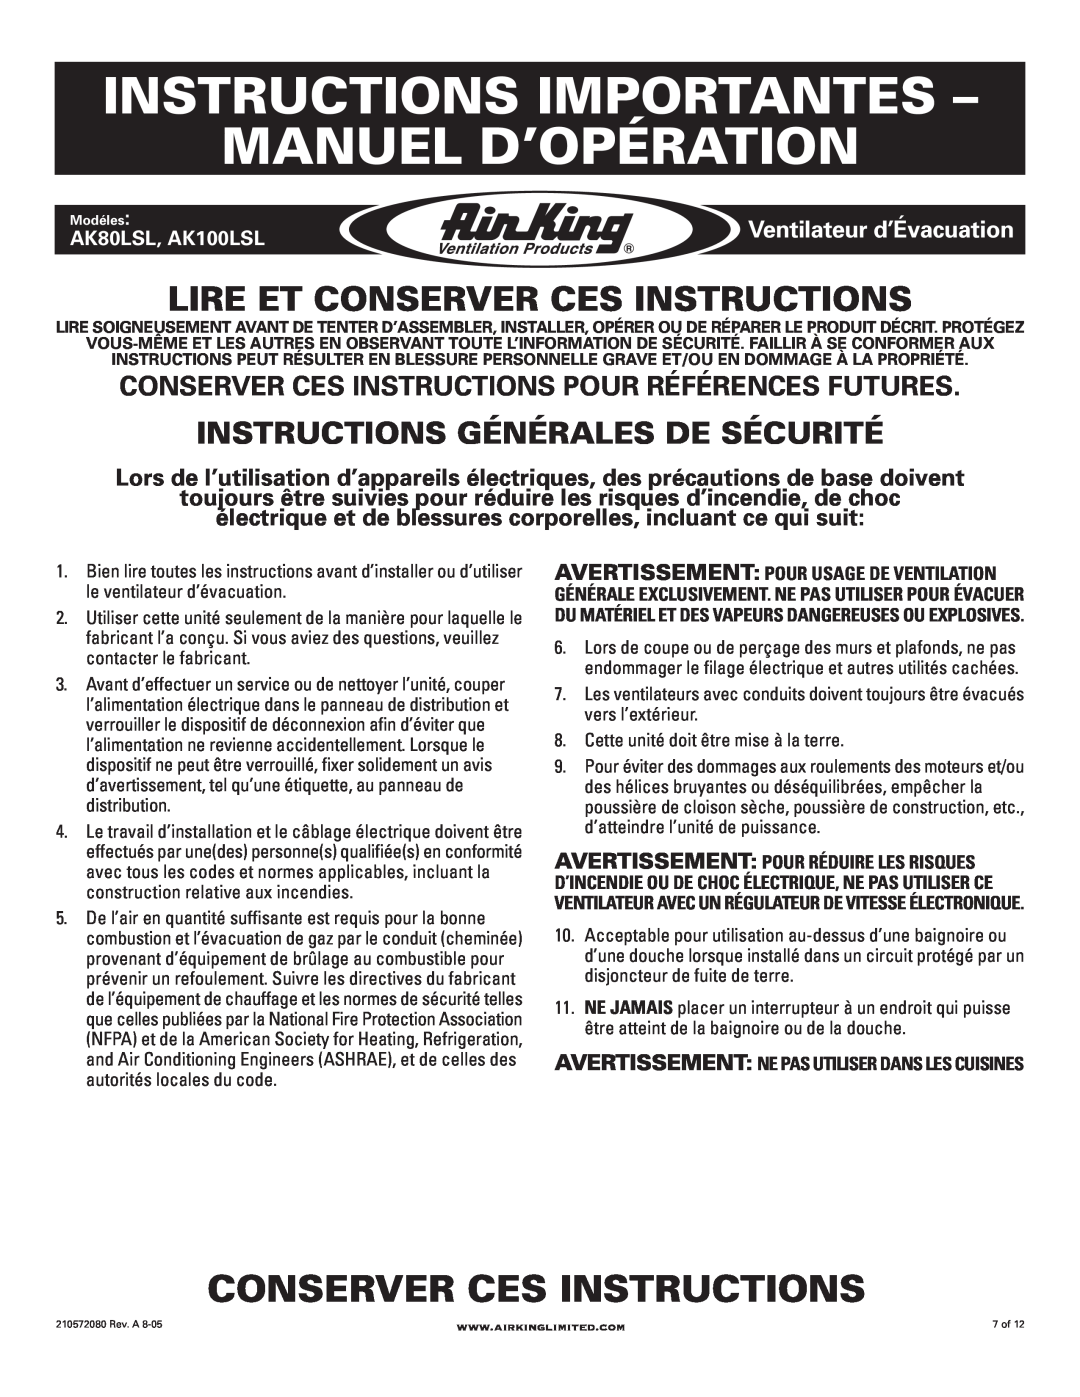 Air King AK100LSL manual Instructions Importantes Manuel D’Opération, Conserver Ces Instructions, Ventilateur d’Évacuation 